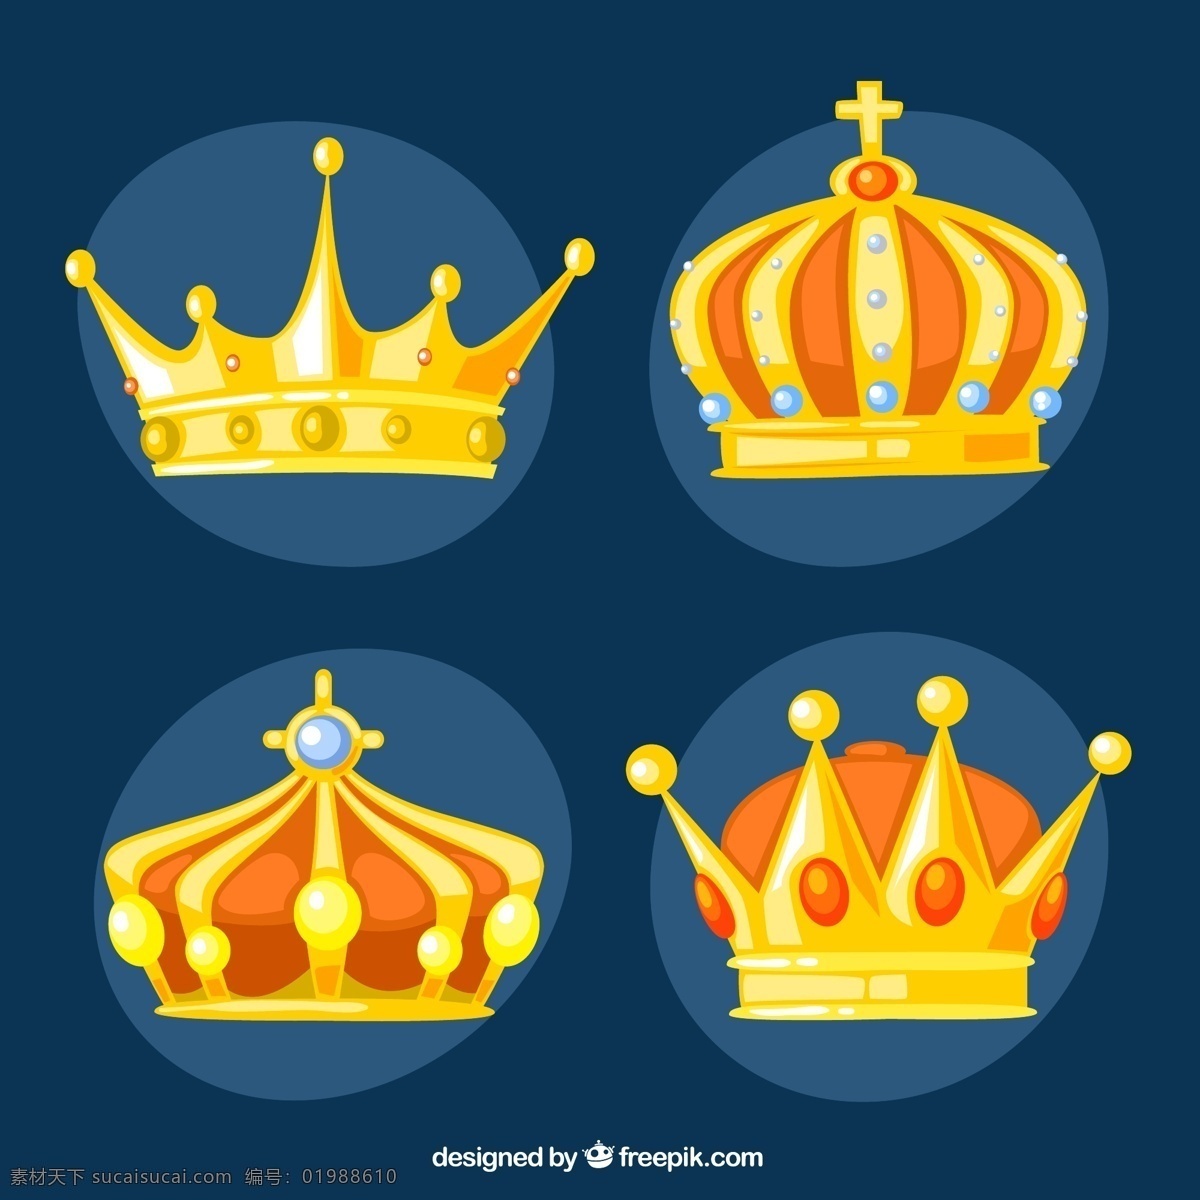 精美 王冠 矢量图 皇冠 金色 金子 国王 王室 珍珠 贵族